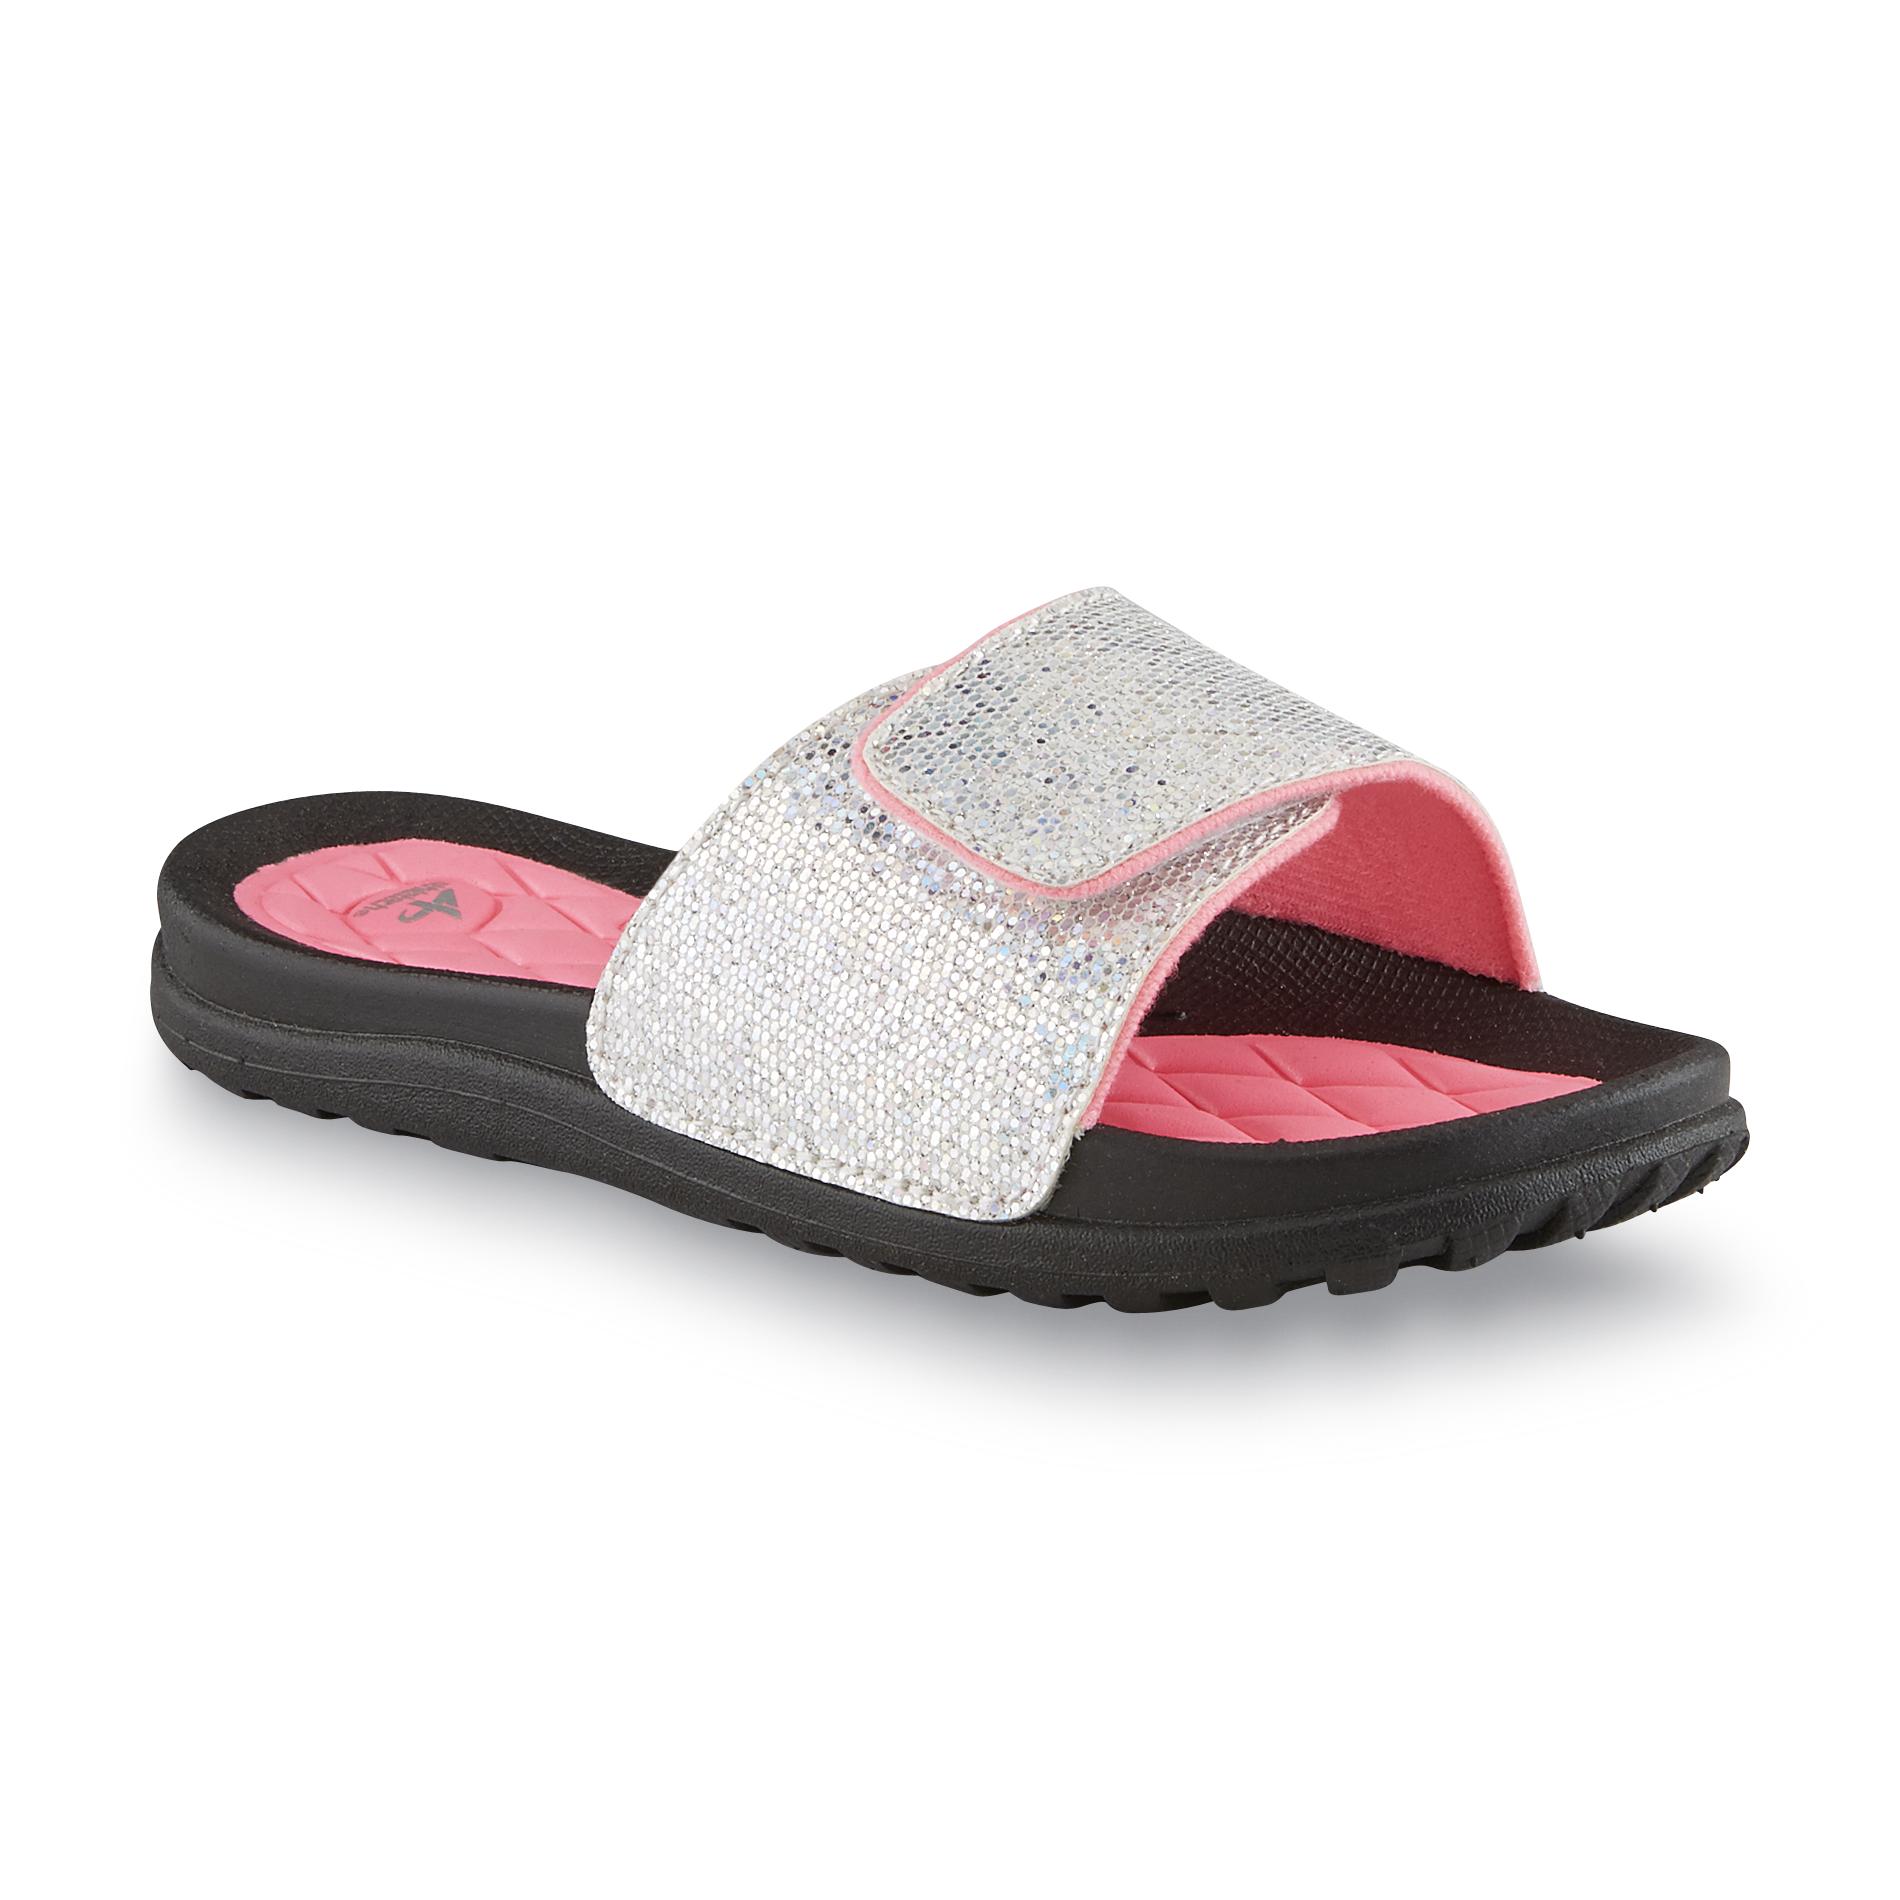 Athletech Girl's Rugger Silver/Pink Slide Sandal